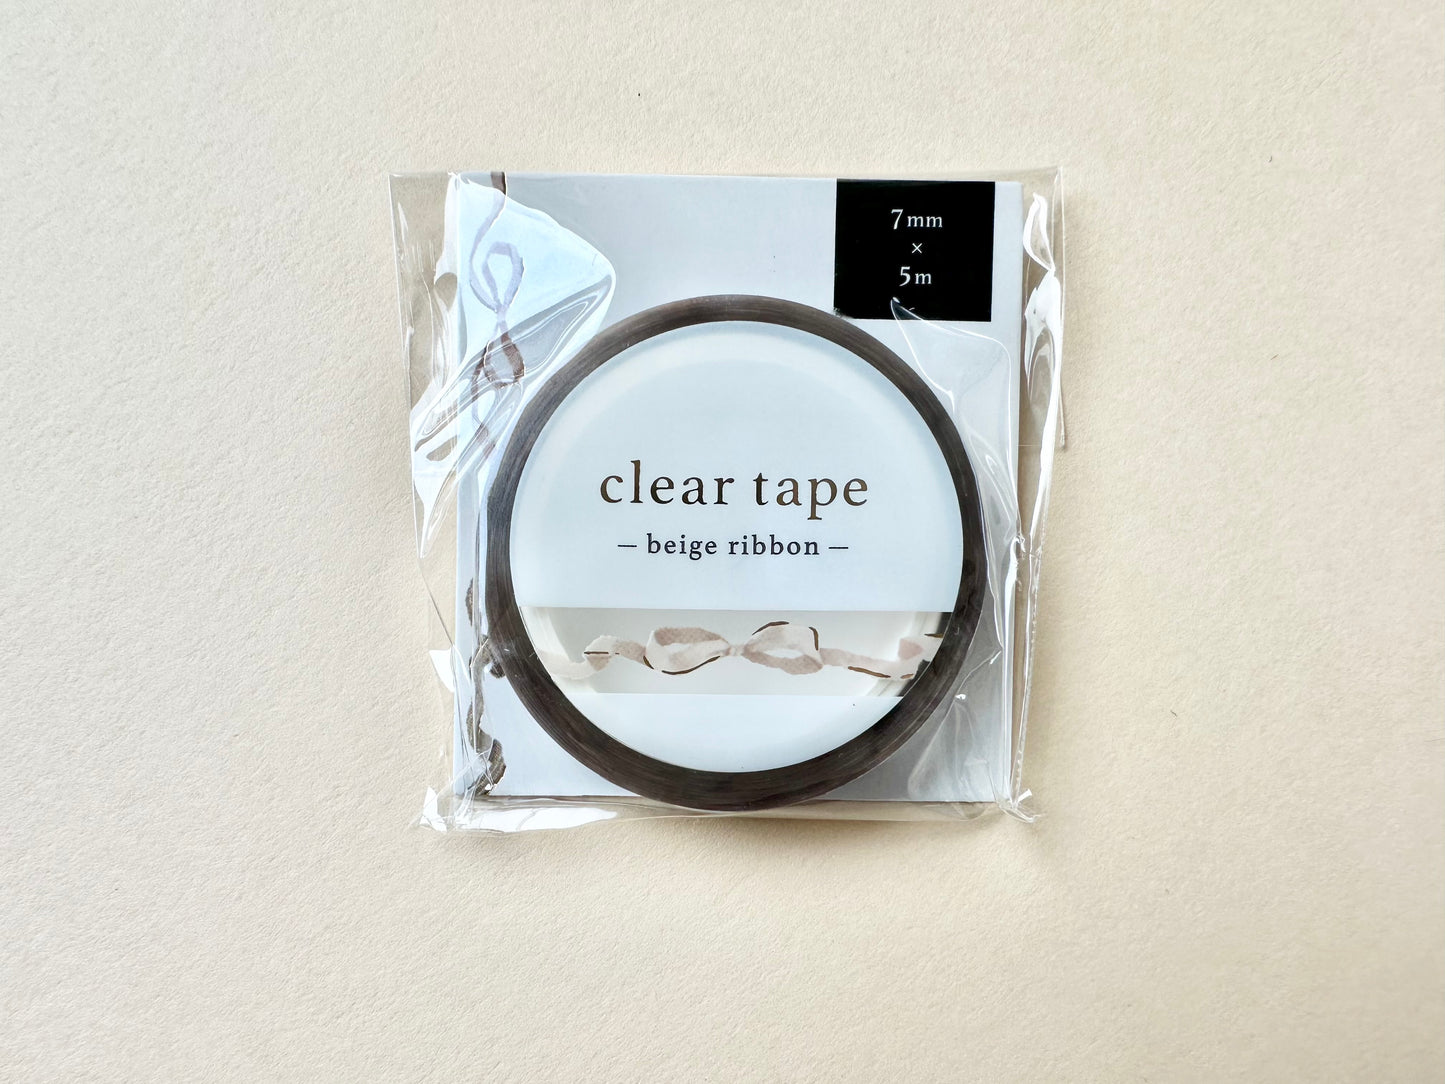 Cleartape 7mm Beige Ribbon